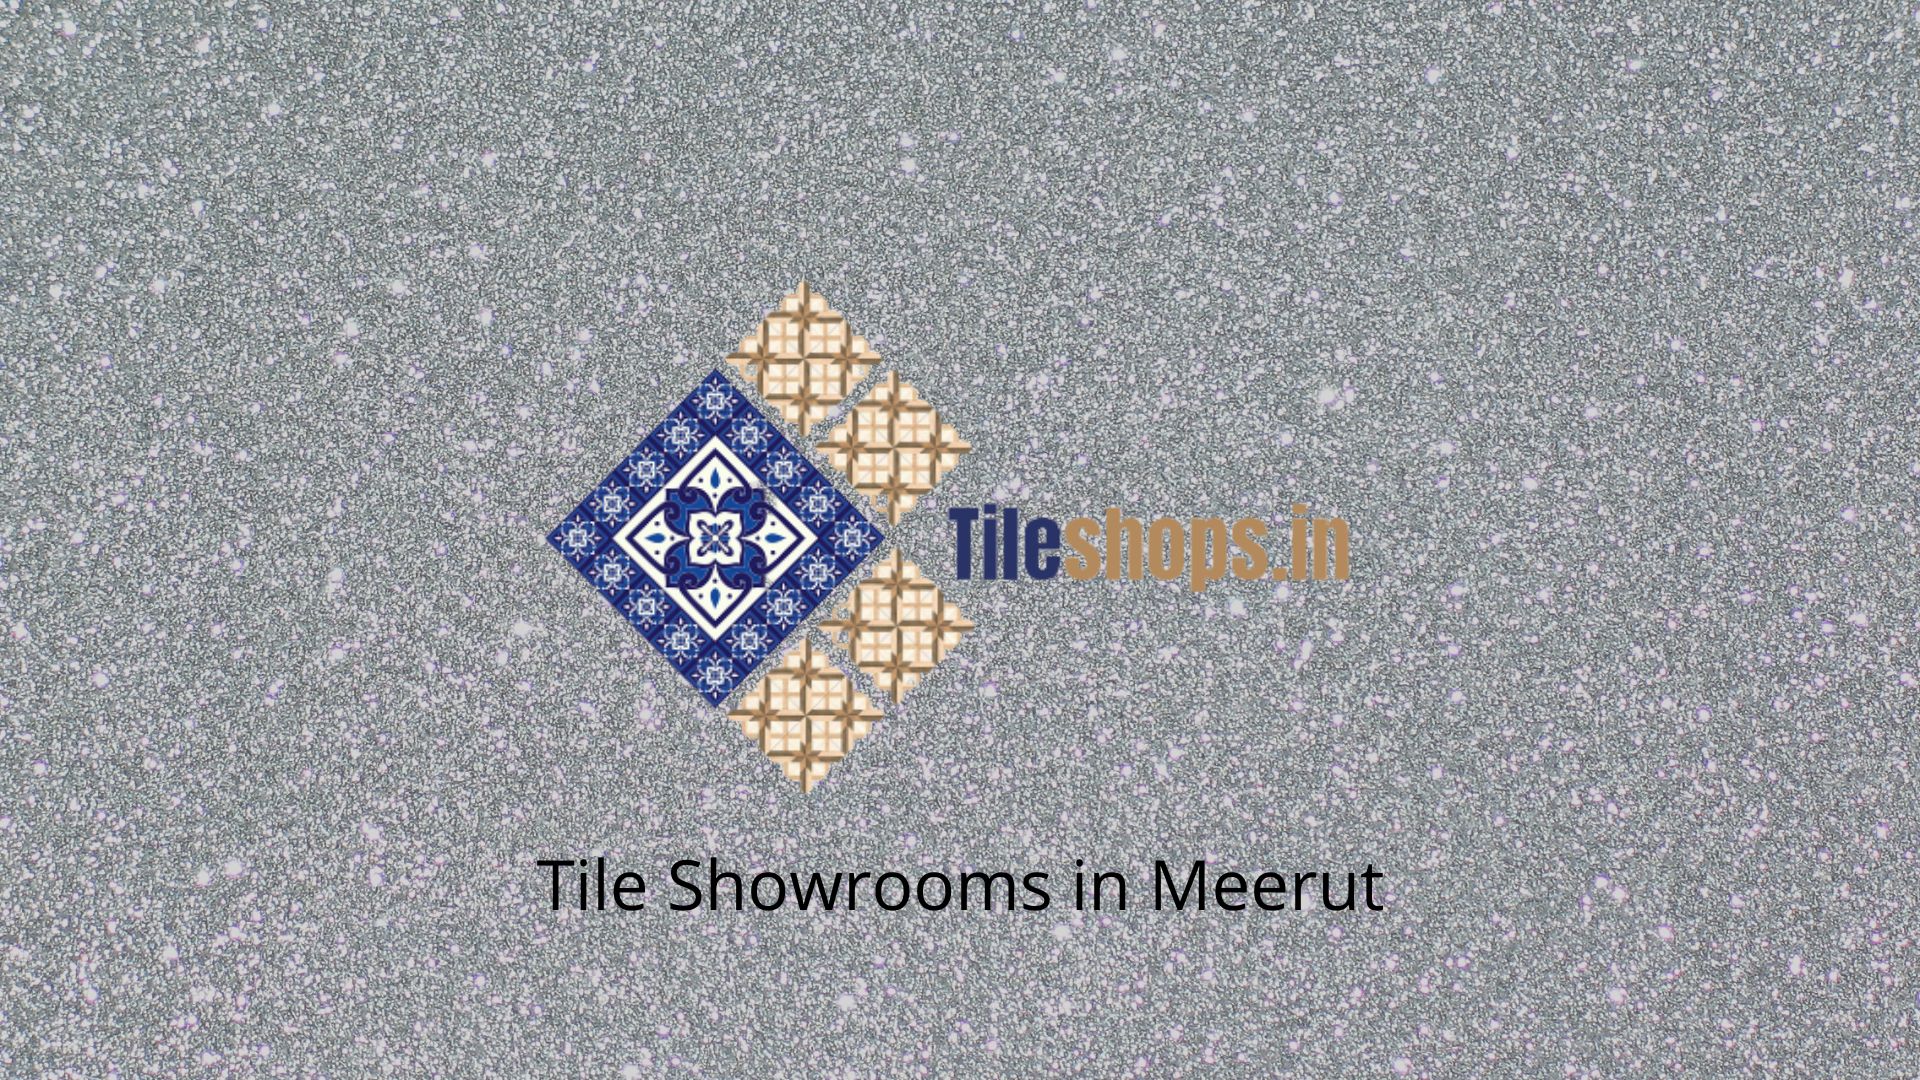 Tile Showrooms in Meerut